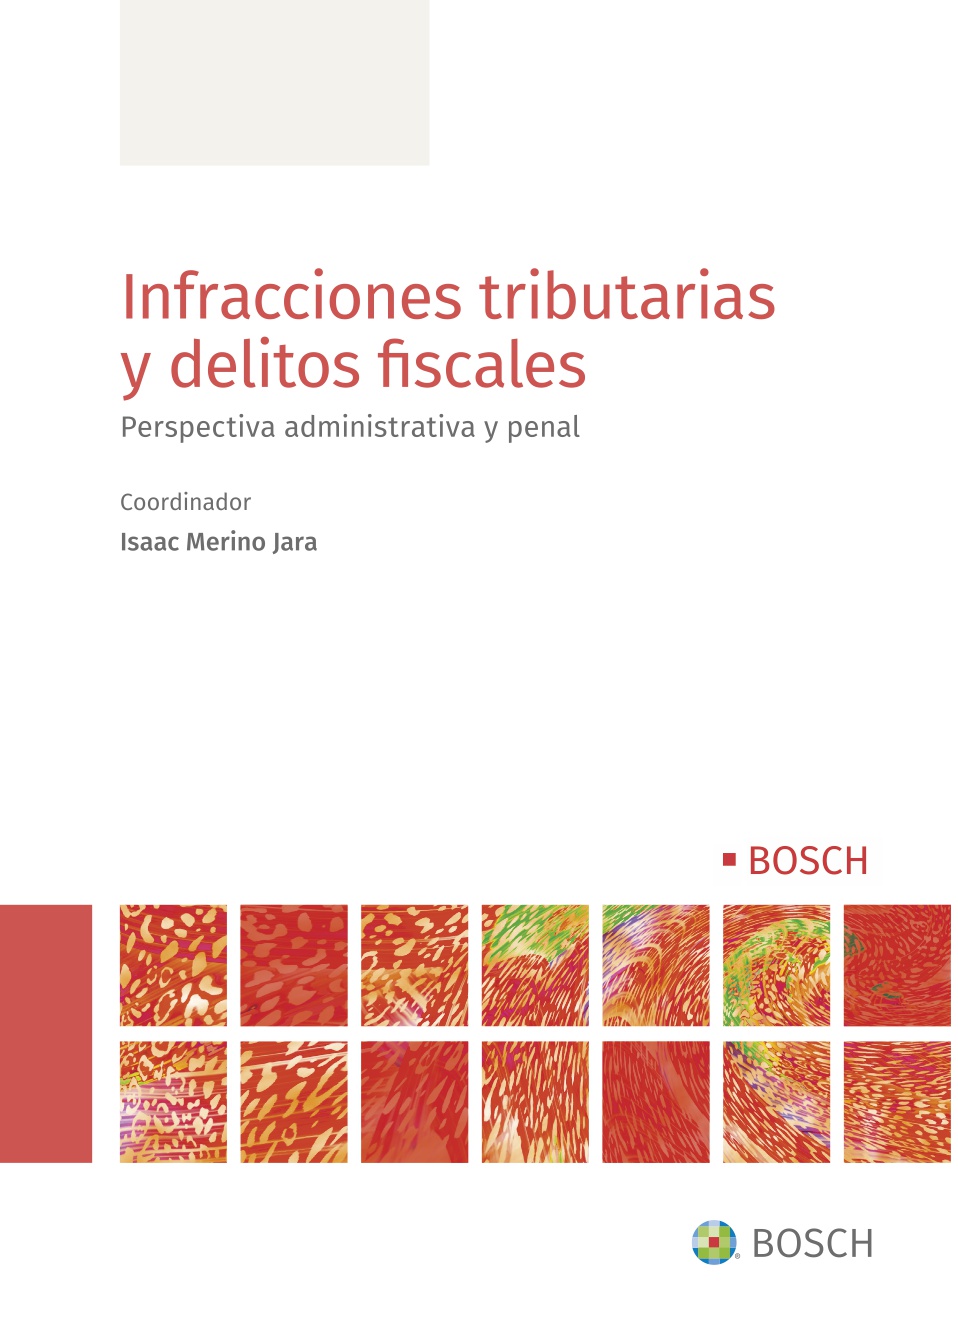 Infracciones tributarias y delitos fiscales   «Perspectiva administrativa y penal»